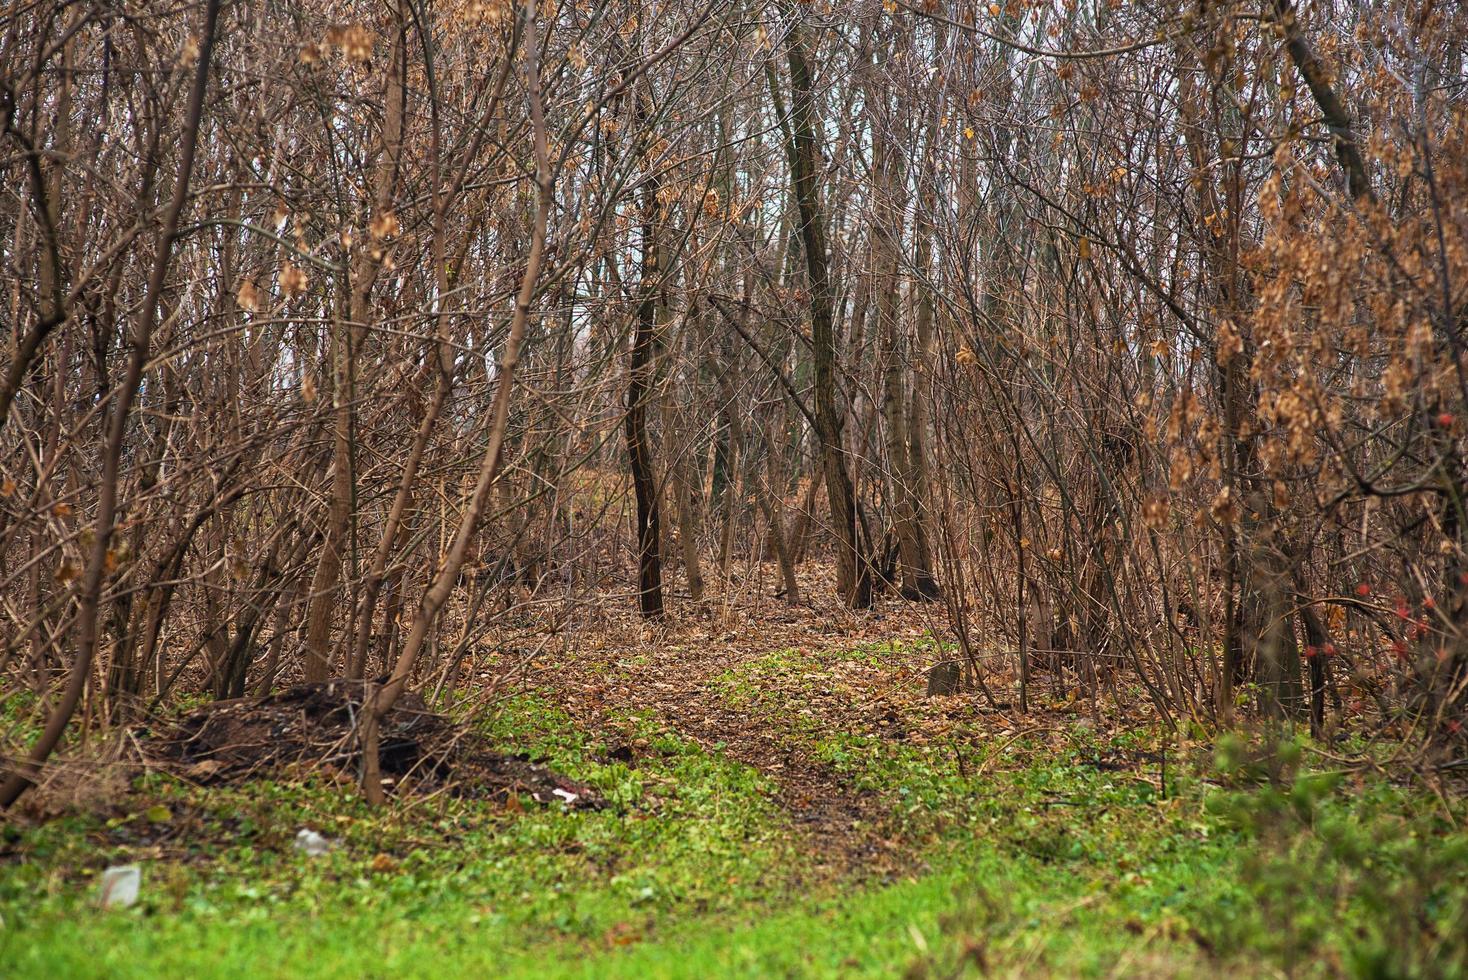 bosco nel tardo autunno o all'inizio della primavera. rami d'albero senza foglie, erba giallo-verde e un piccolo sentiero che si addentra nel bosco foto